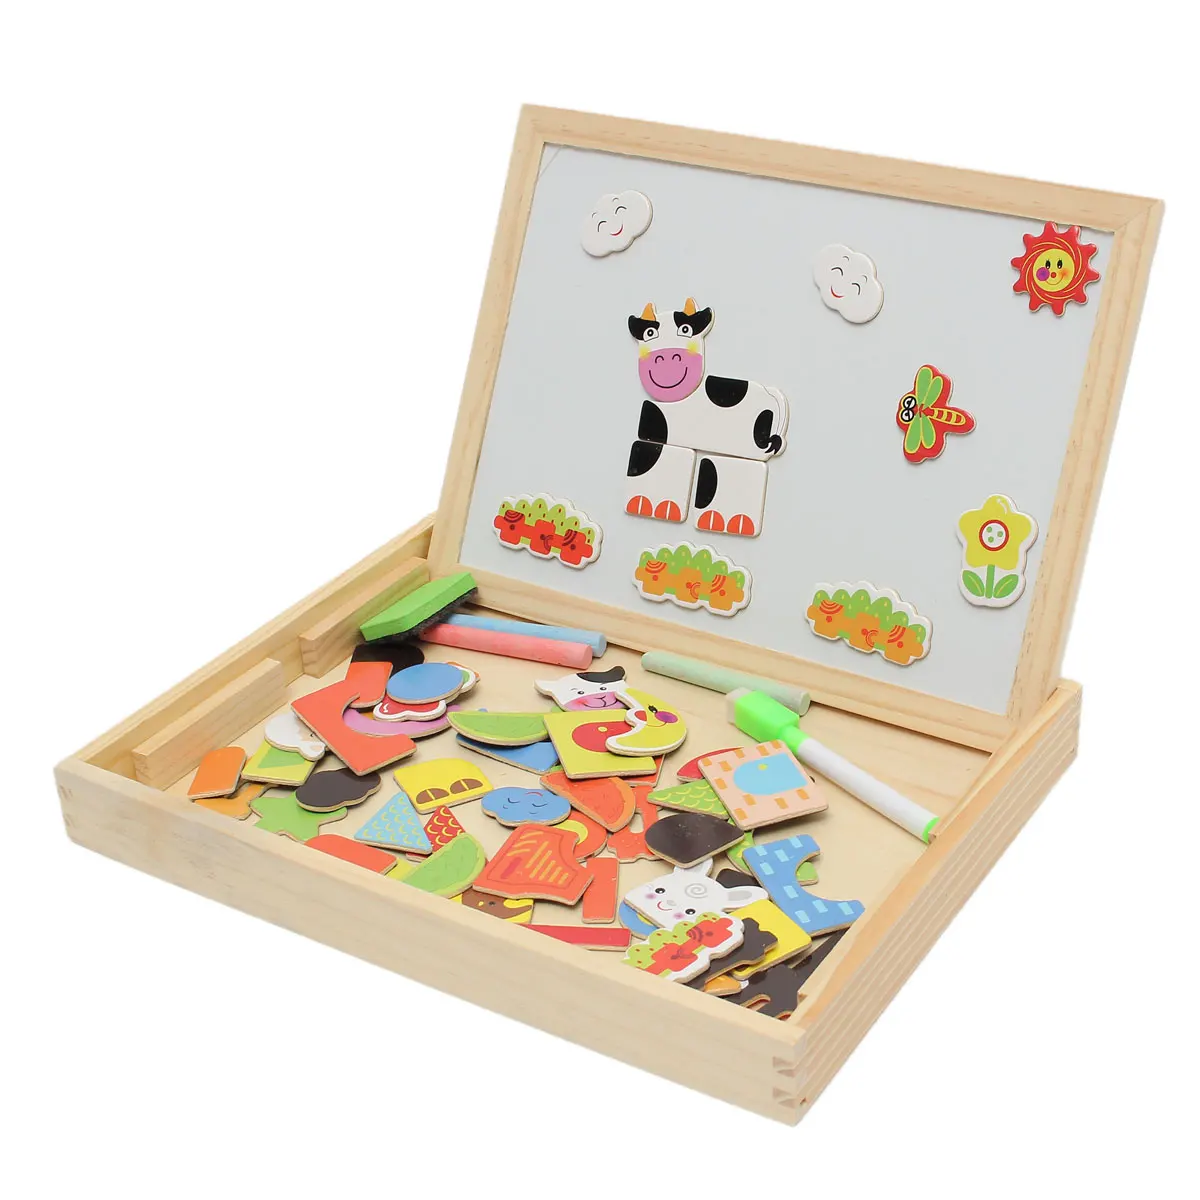 Umu 3 вида стилей письменная доска для рисования магнитная головоломка двойной мольберт малыш деревянная игрушка подарок развития интеллекта детей игрушка - Цвет: 3